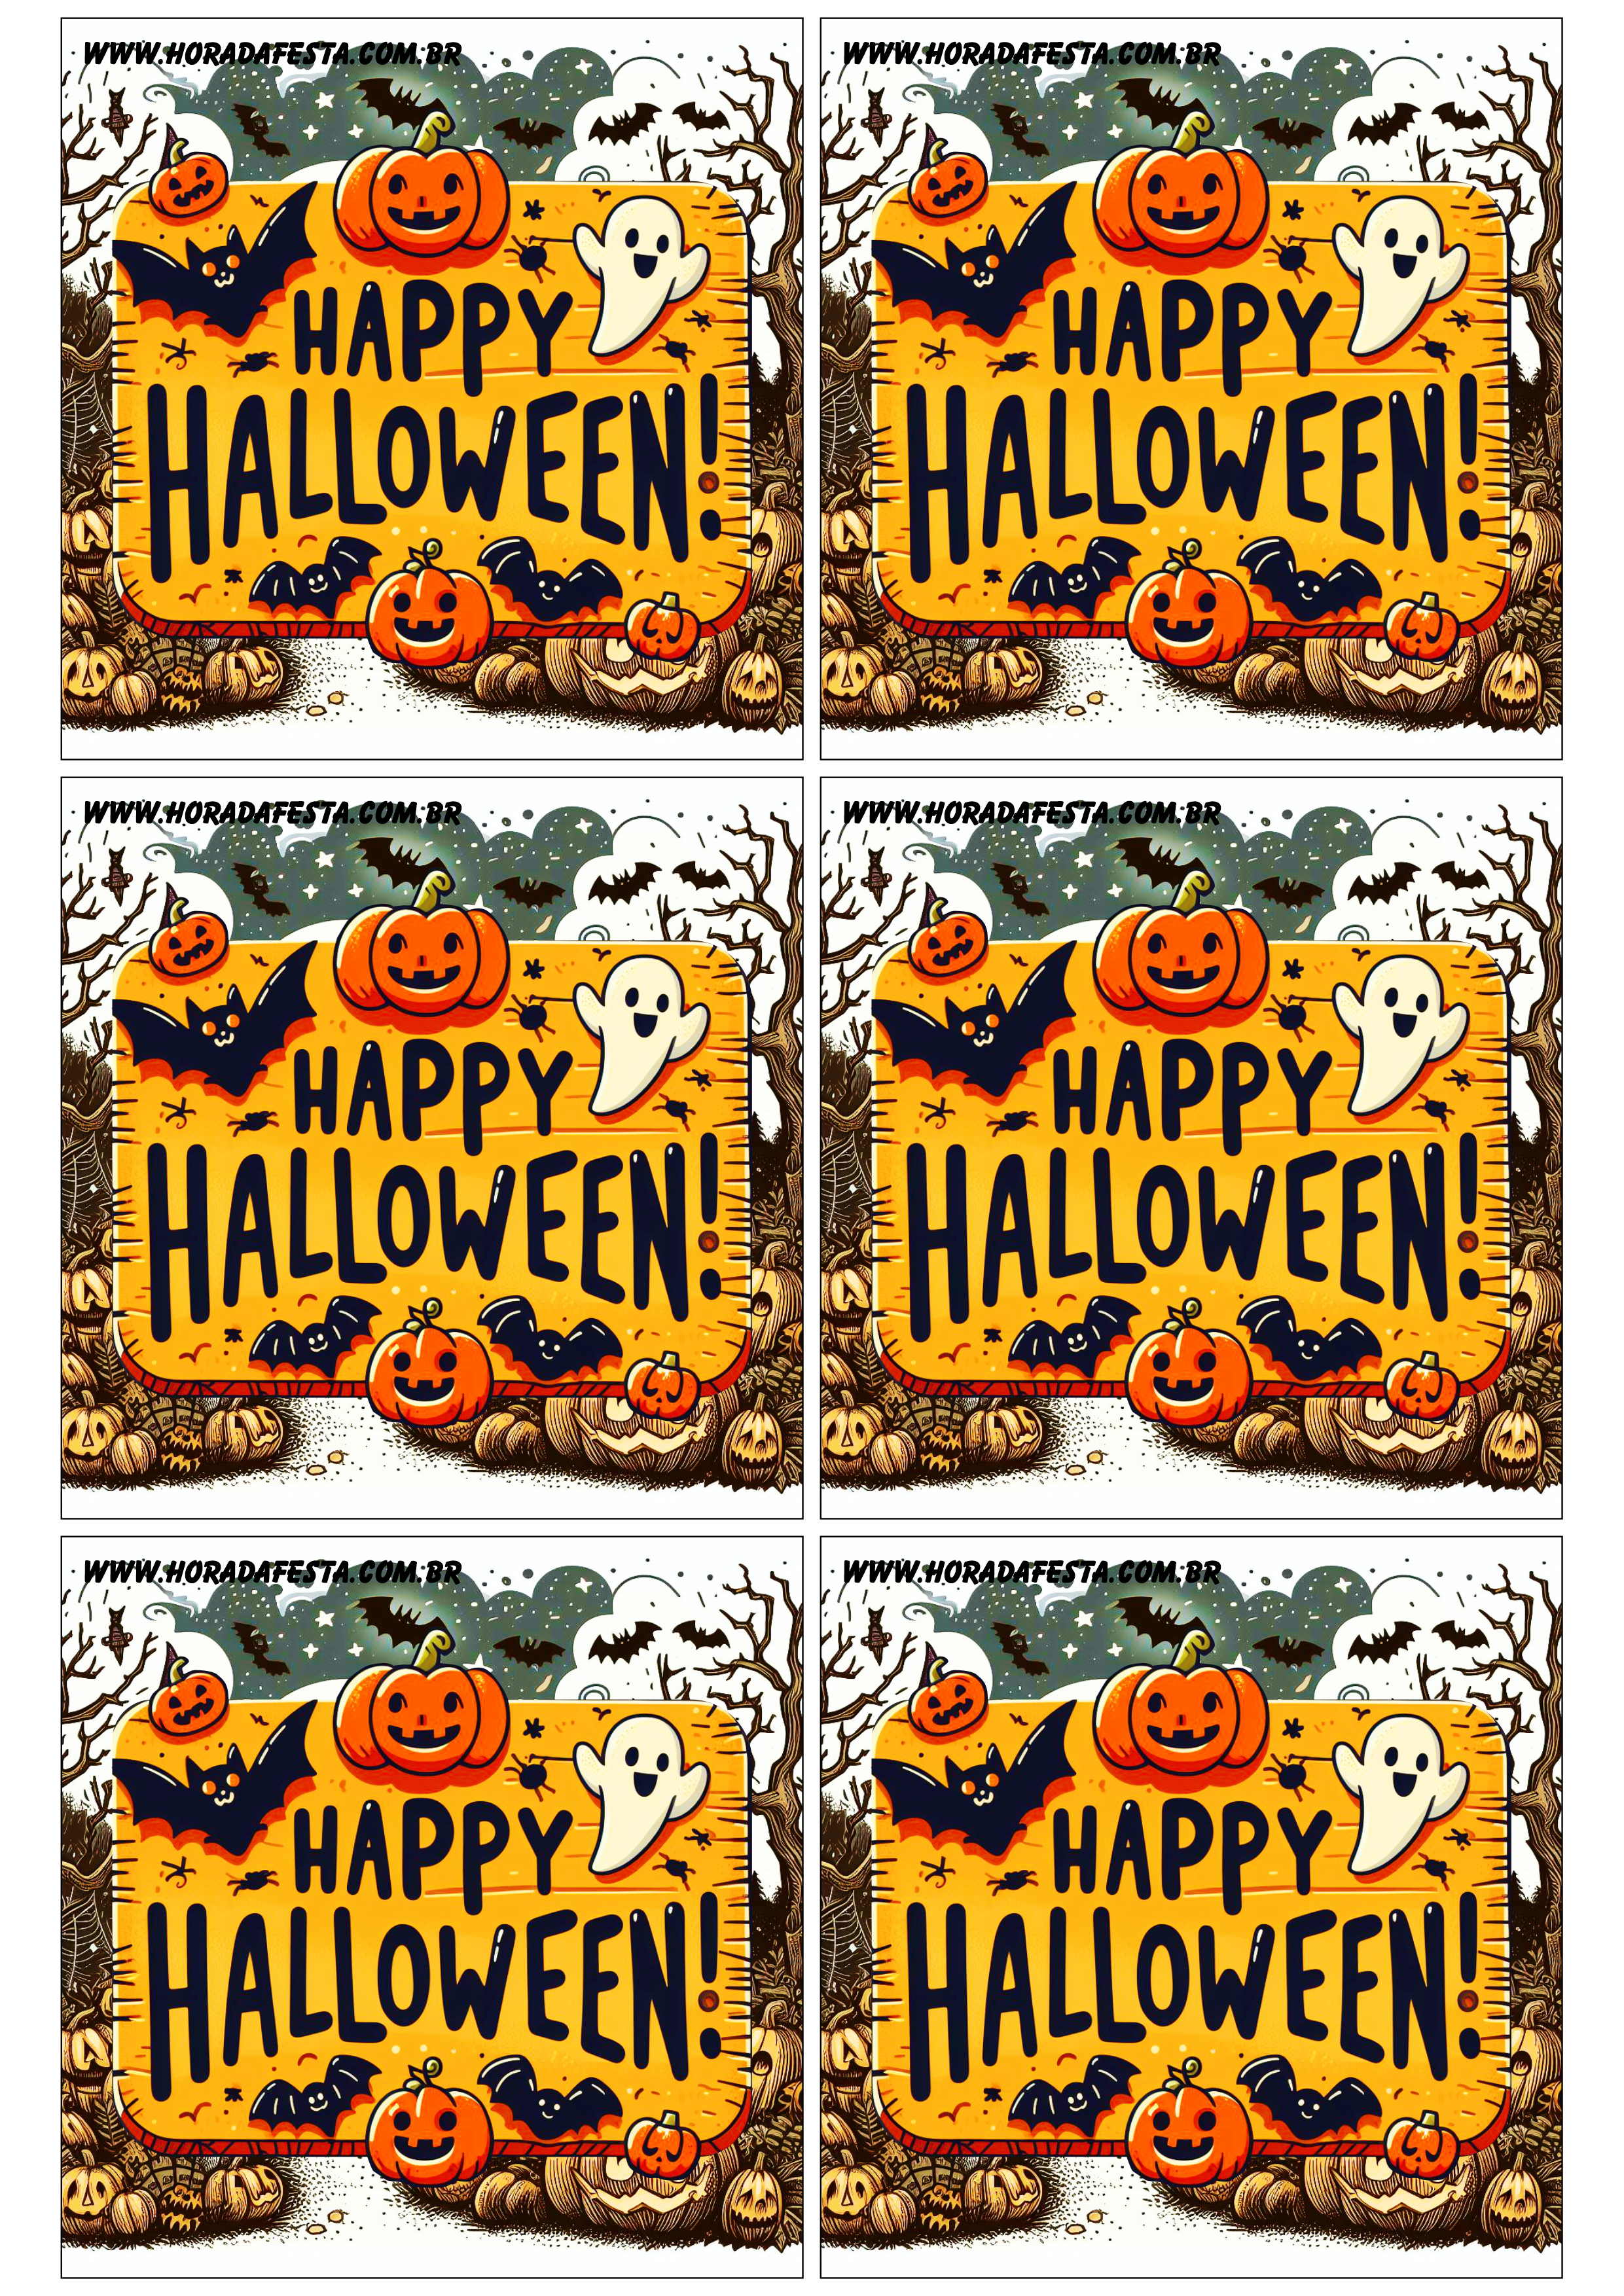 Happy Halloween adesivo tag sticker painel decoração grátis de festa artigos de papelaria 6 imagens png